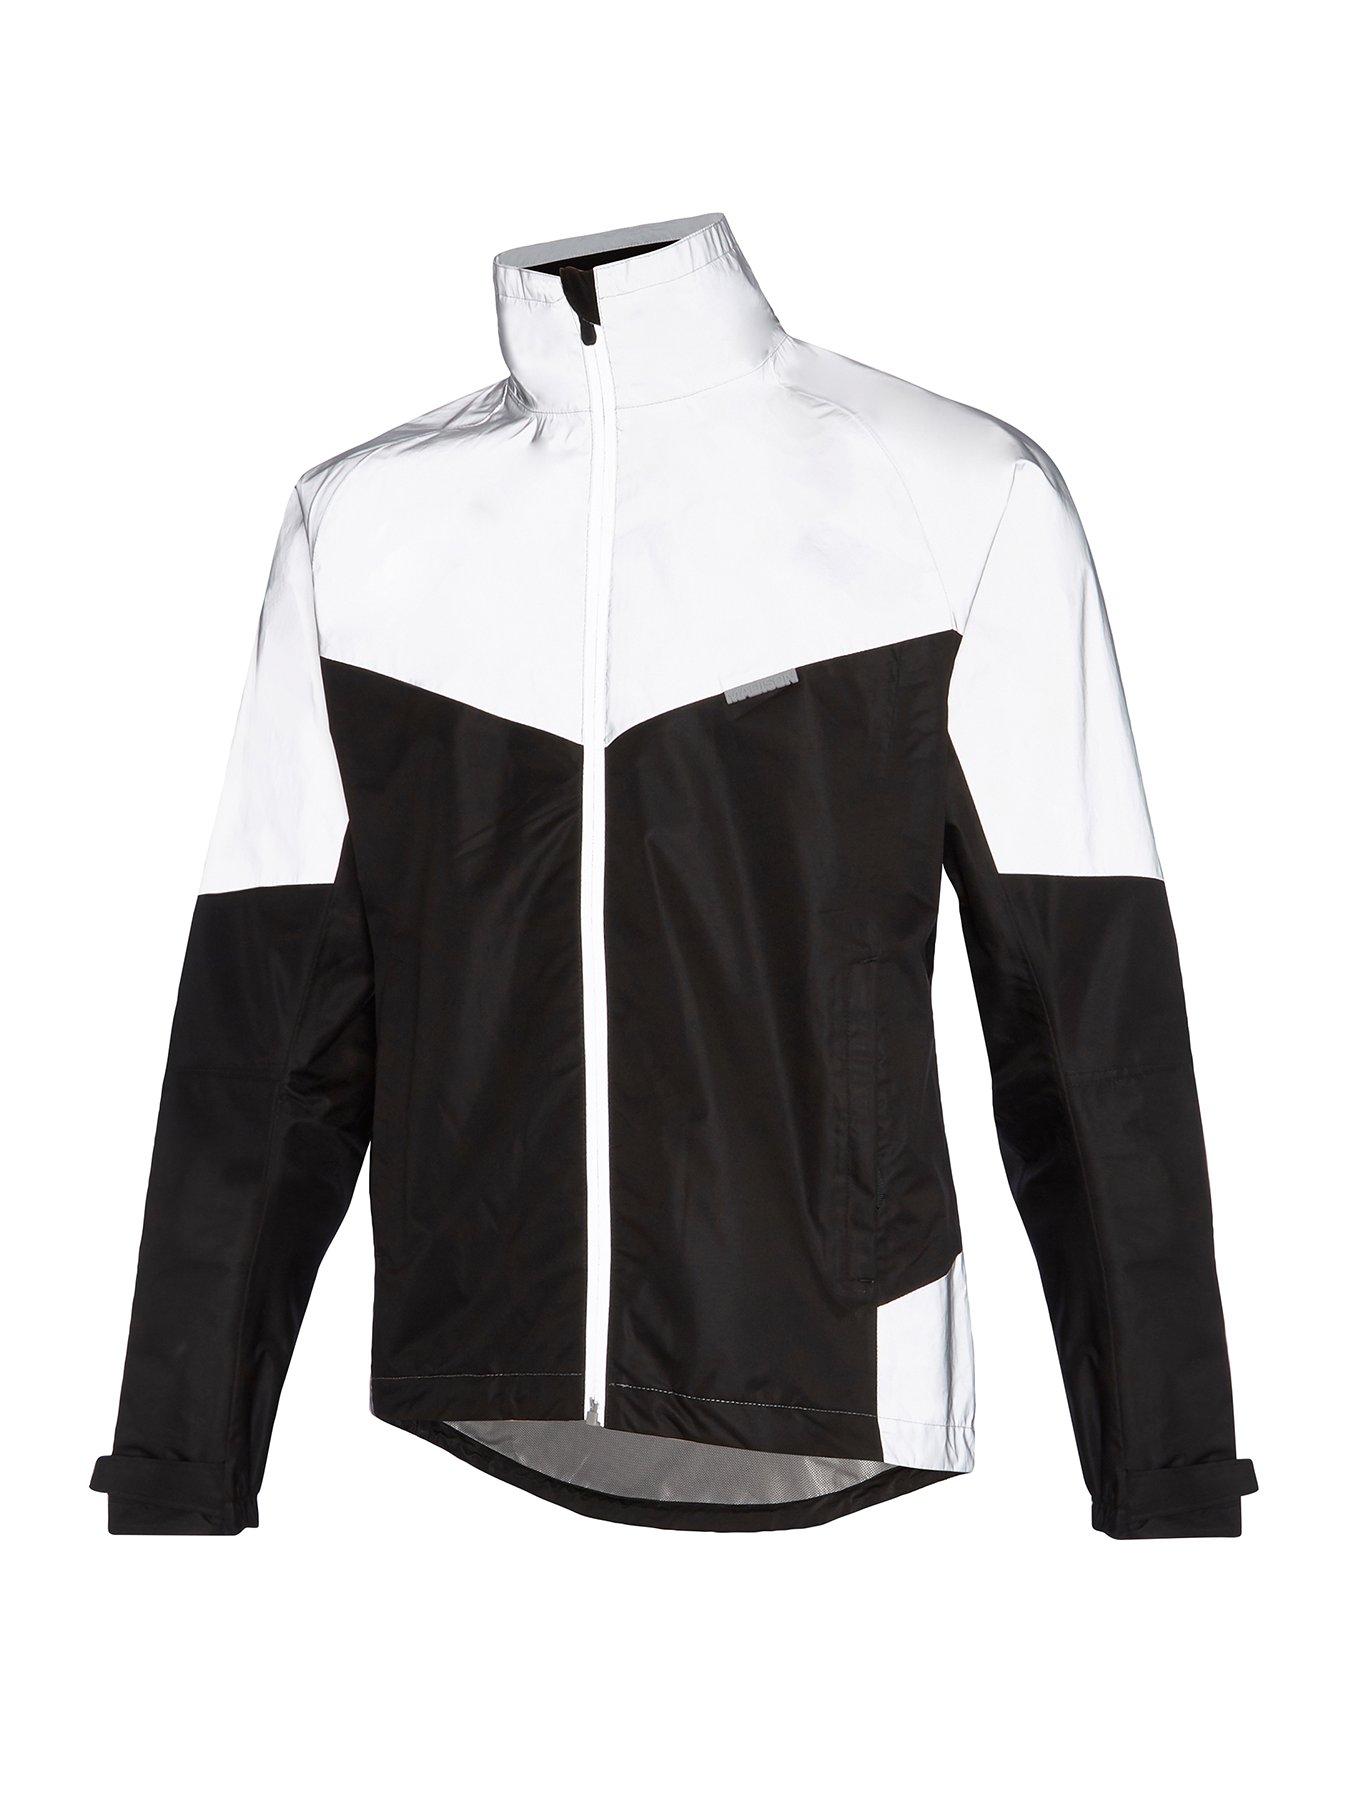 cycling jackets mens uk